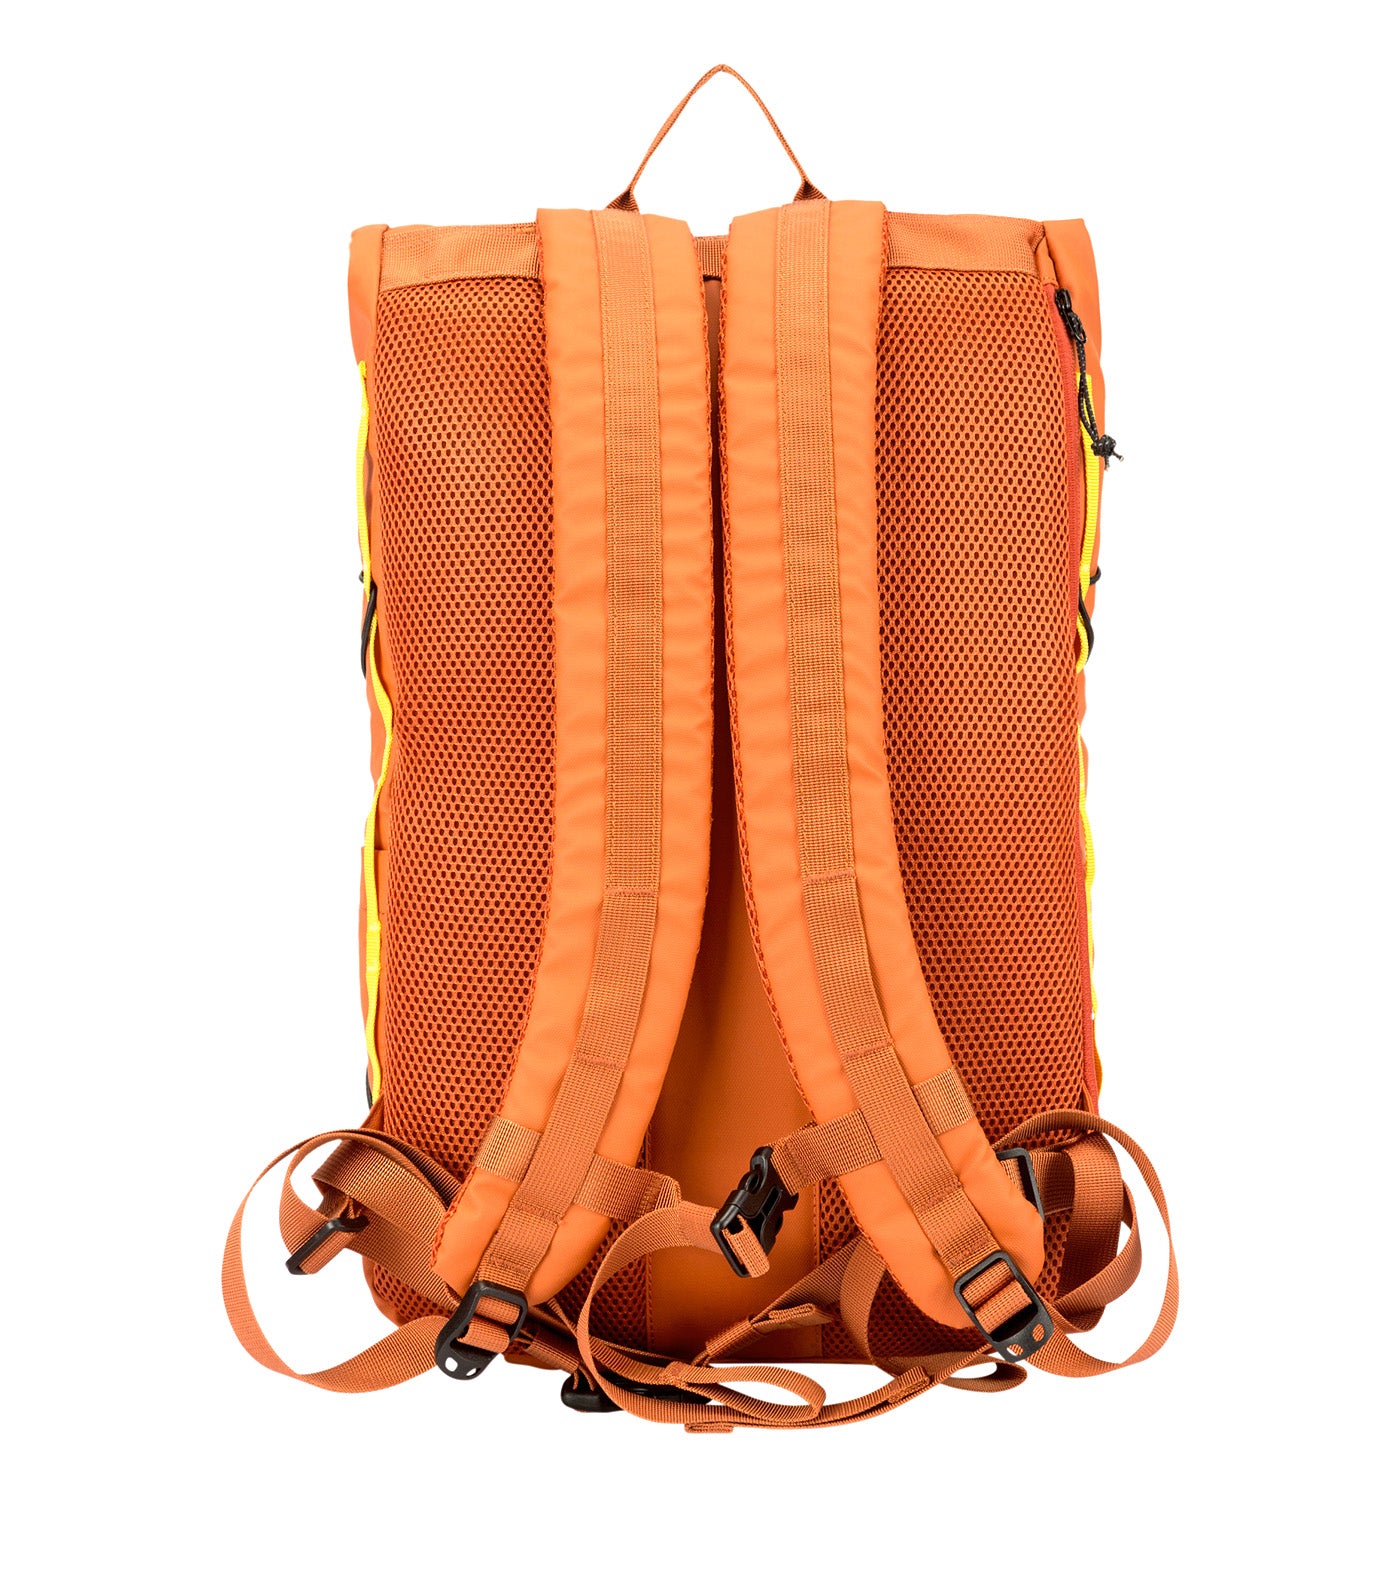 Dayle Roll Top Backpack 21/25L Orange